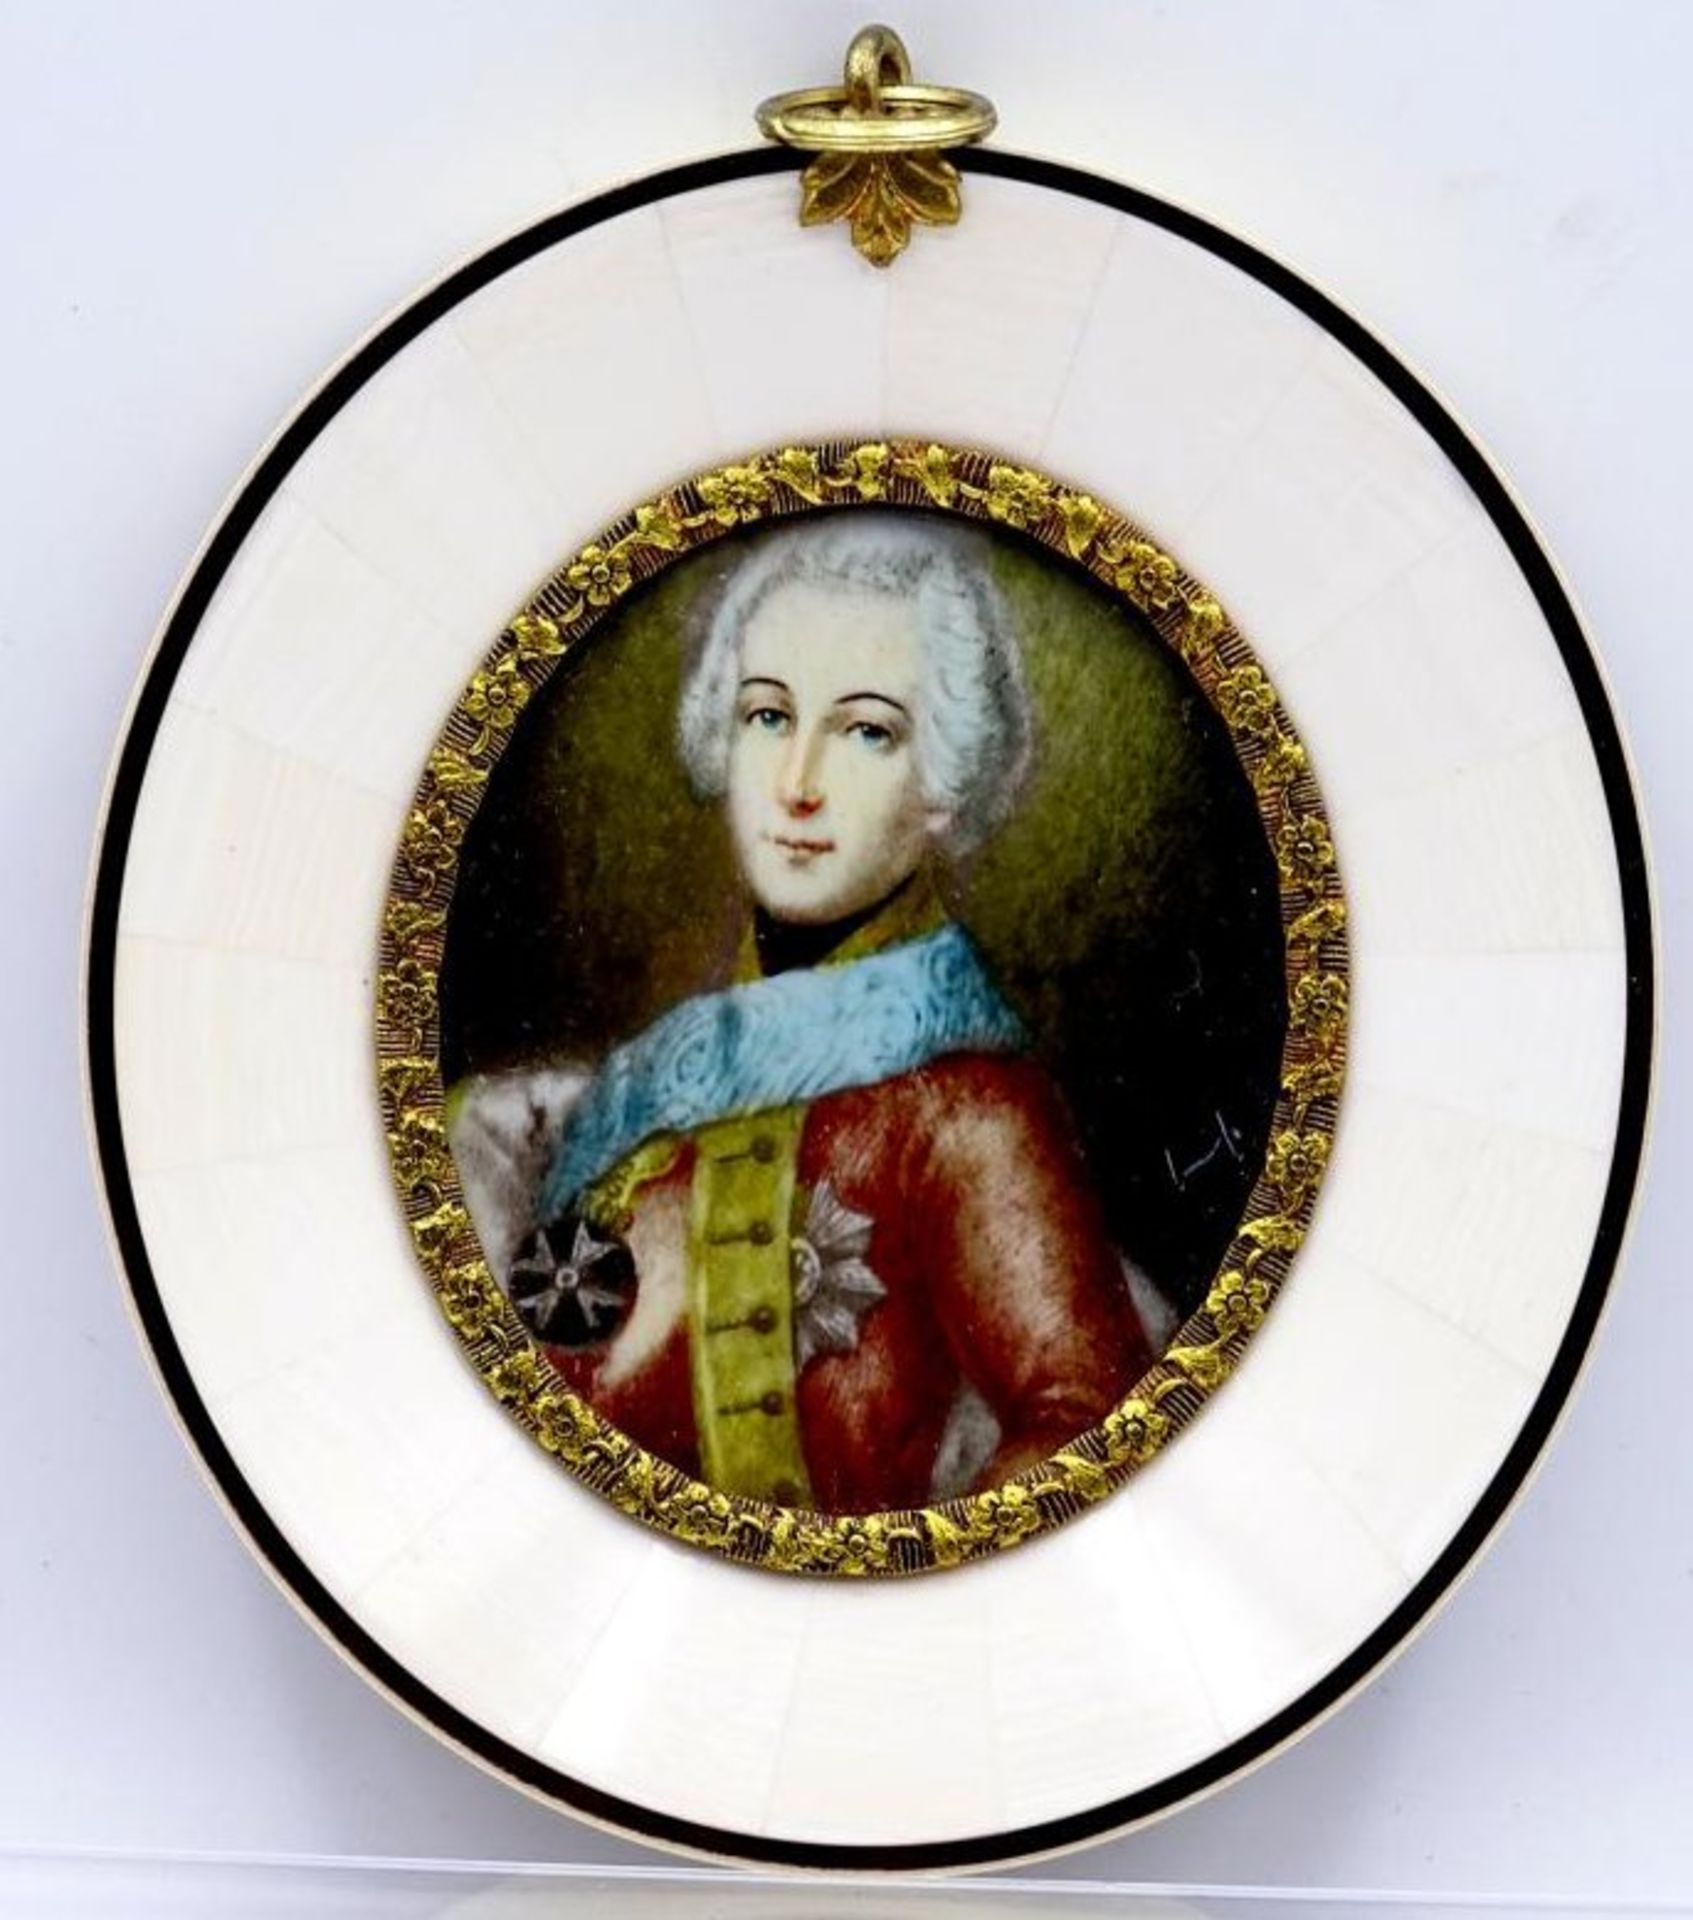 Miniaturportrait "Prince de Toulon" auf Beinplatte, 10x9 cm- - -22.61 % buyer's premium on the